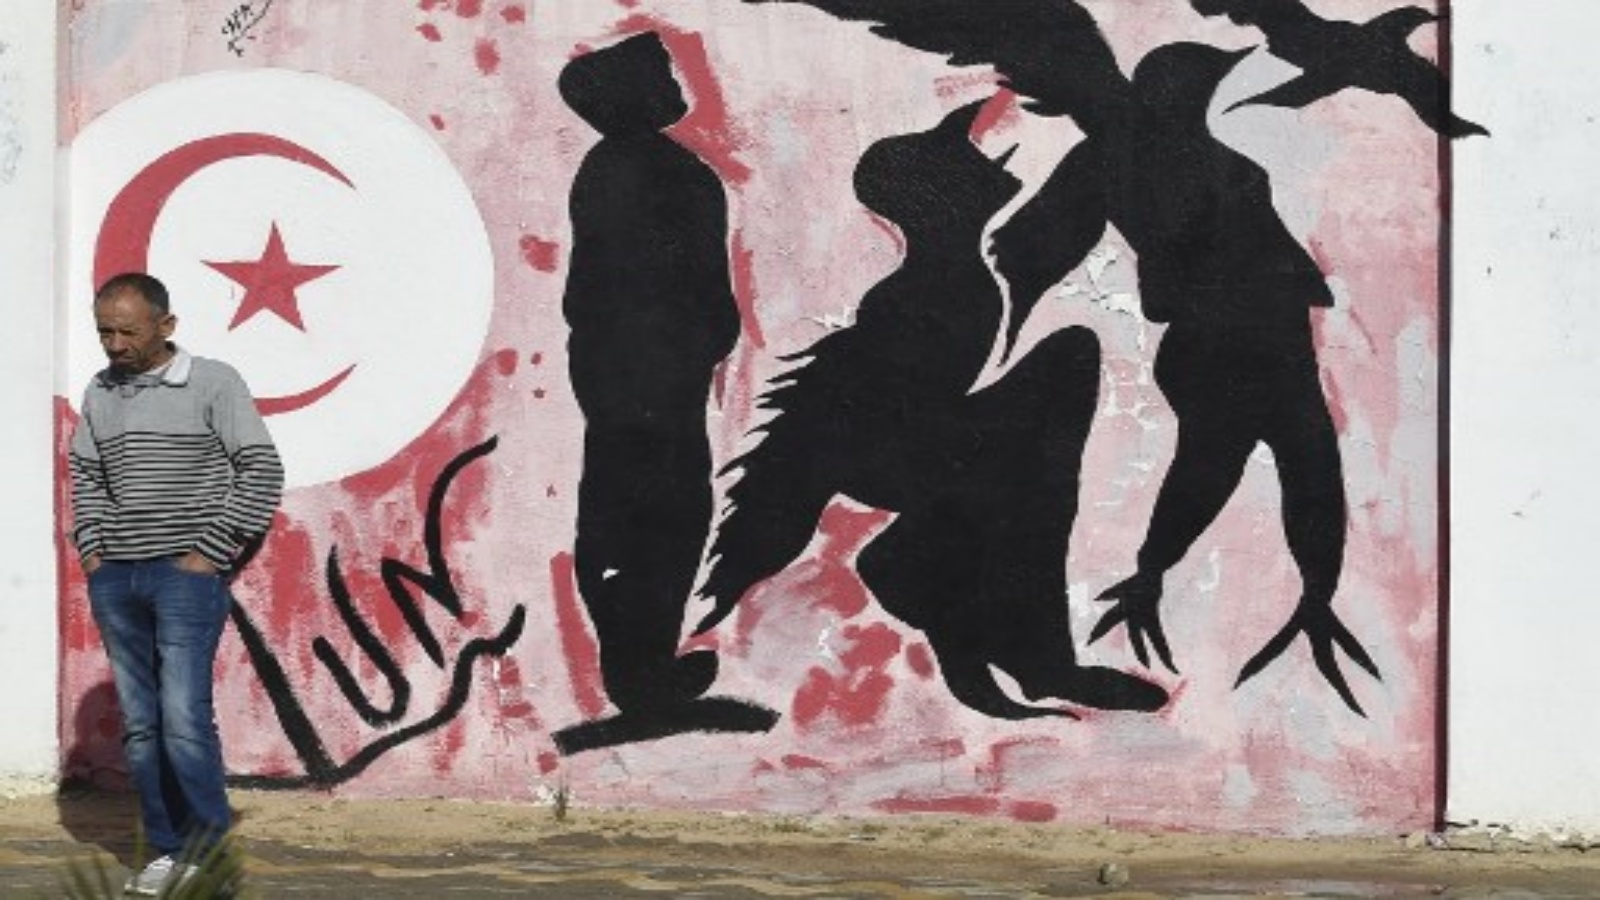 رجل ينتظر كتابات قرب جدران تصور صورة ظلية لرجل يتحول إلى طائر يرمز إلى الحرية ، في ساحة محمد البوعزيزي وسط مدينة سيدي بوزيد وسط تونس يوم 27 أكتوبر 2020 ، مهد الثورة التونسية 2011 حيث لا تزال البطالة قائمة